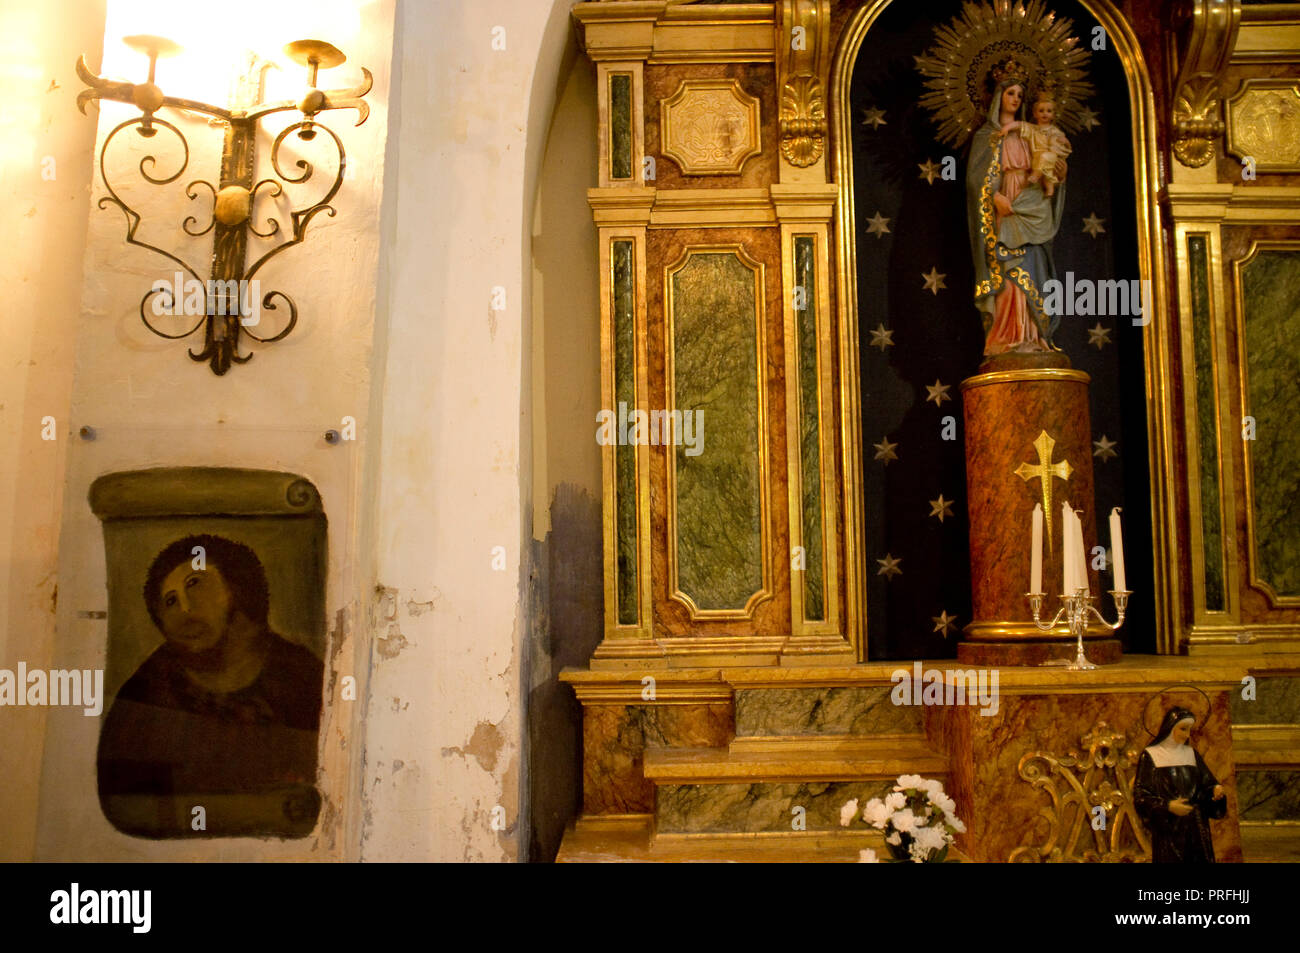 ECCE HOMO, santuario de la iglesia de la misericordia en BORJA, Aragón, España, originalmente pintados por Elias Garcia Martinez y restaurado por Cecilia Gimenez Zueco. Foto de stock